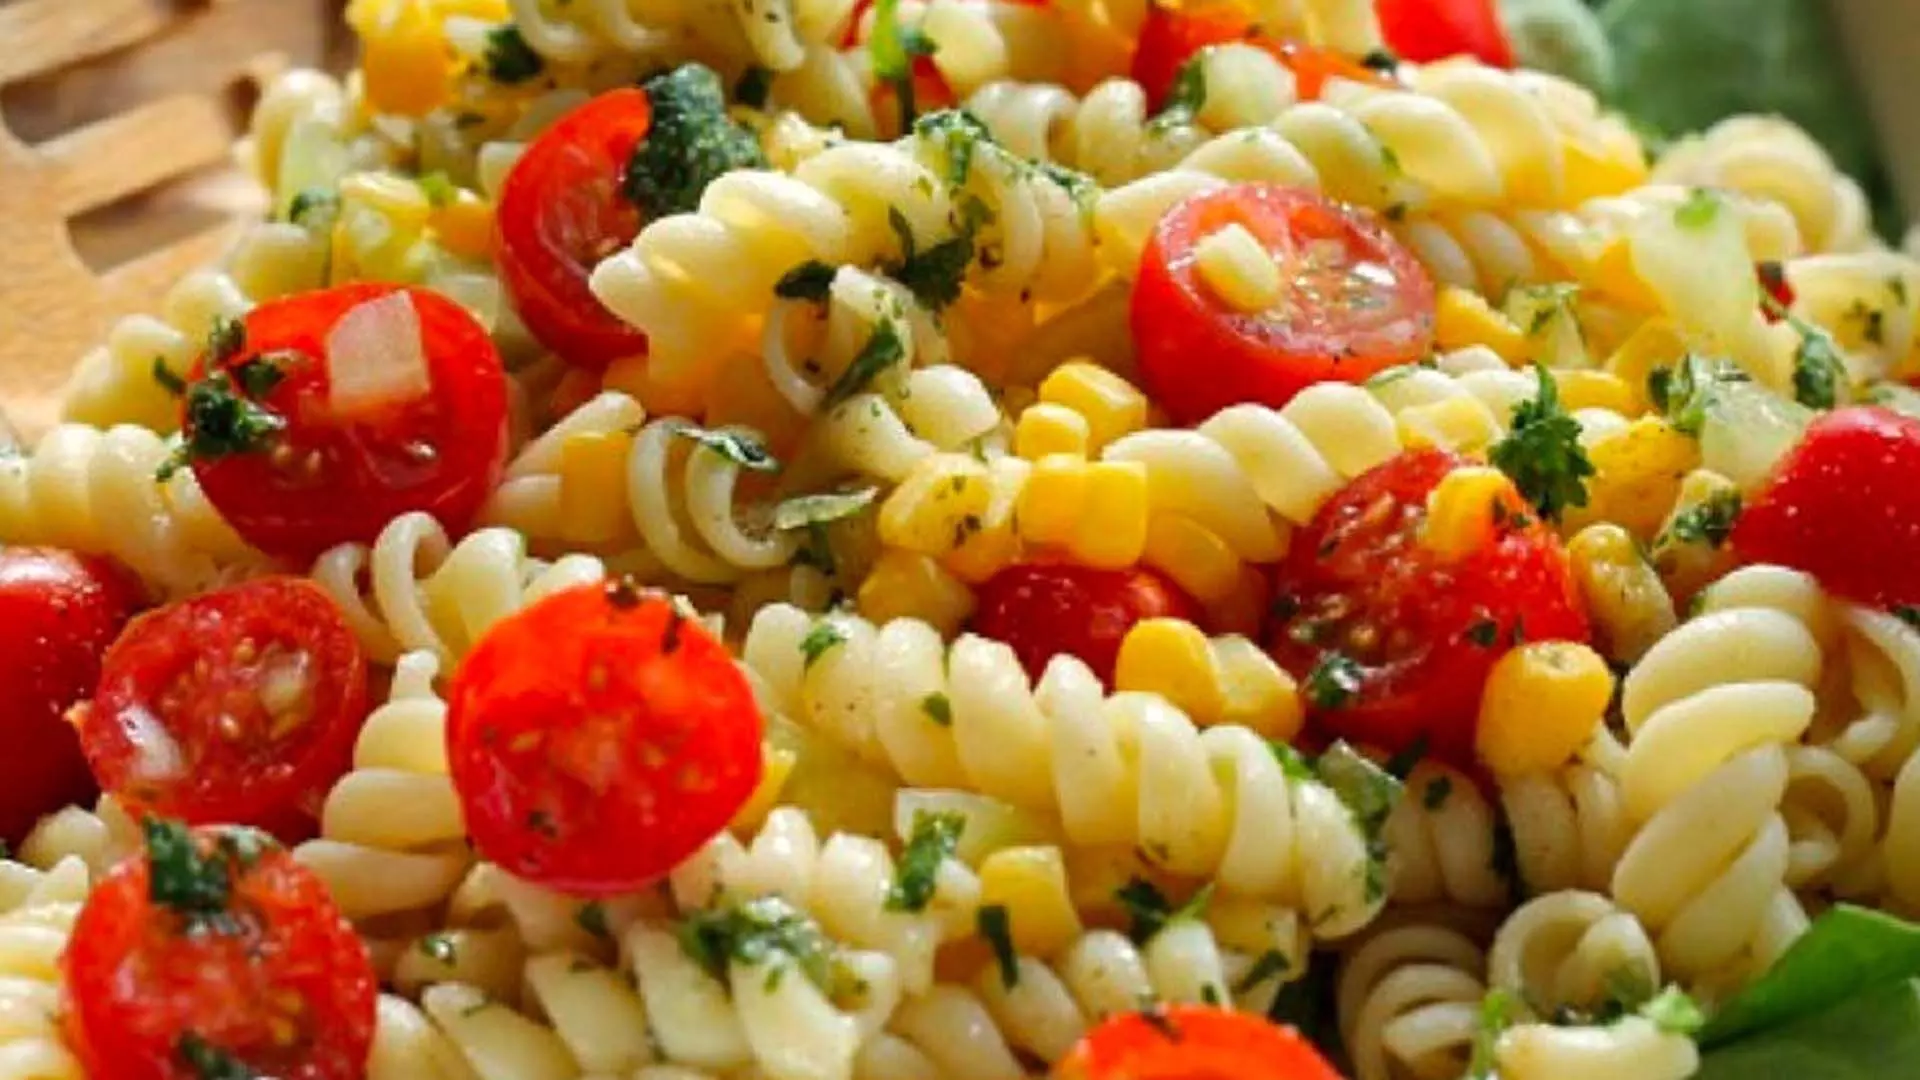 गार्डन-फ्रेश पास्ता के साथ इटली के स्वाद का आनंद लें